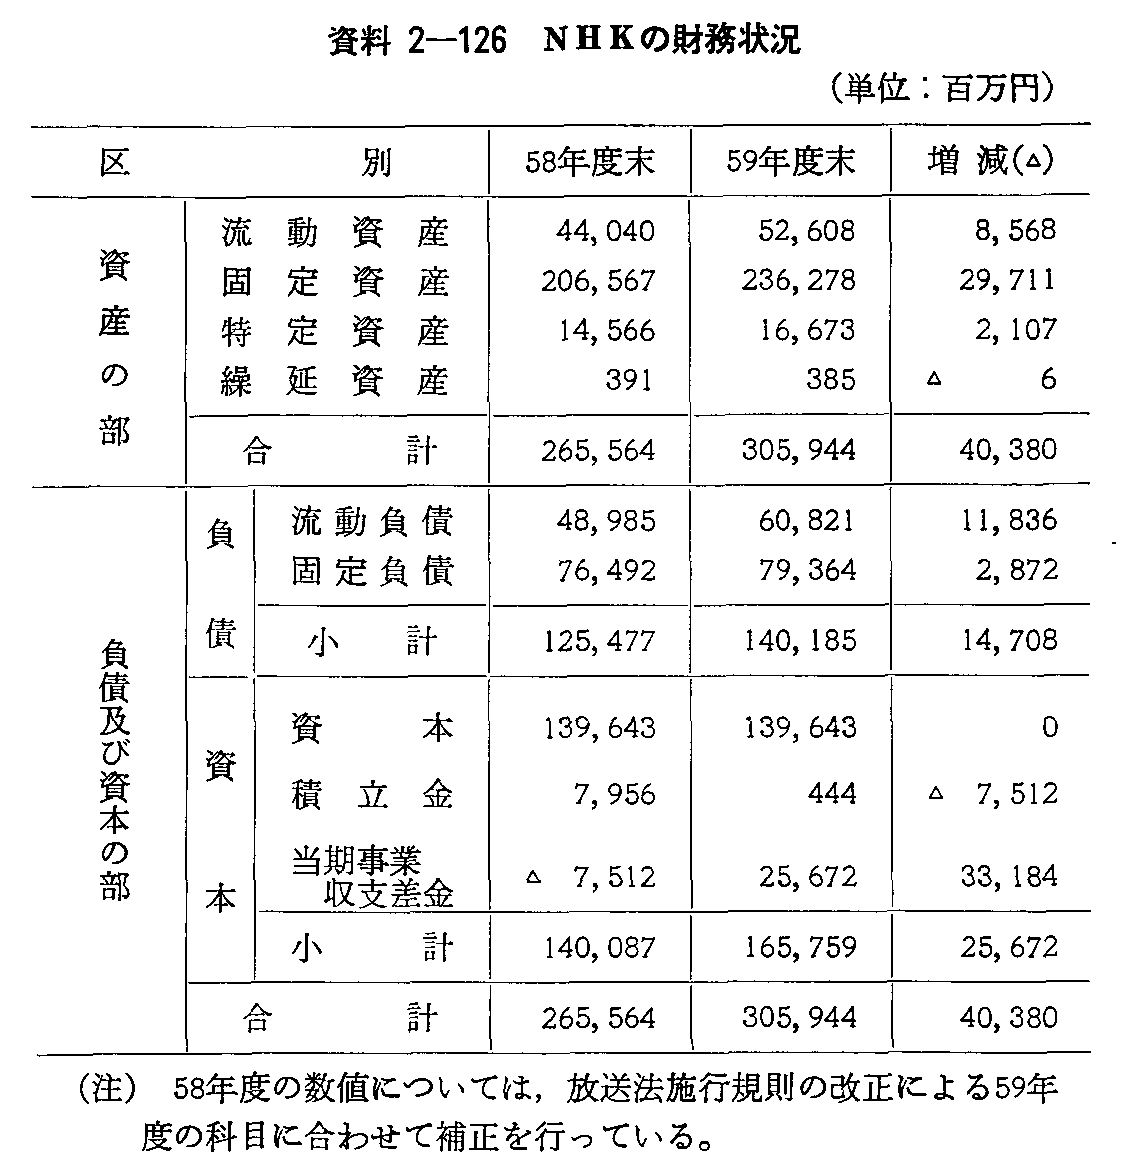 資料2-126 NHKの財務状況